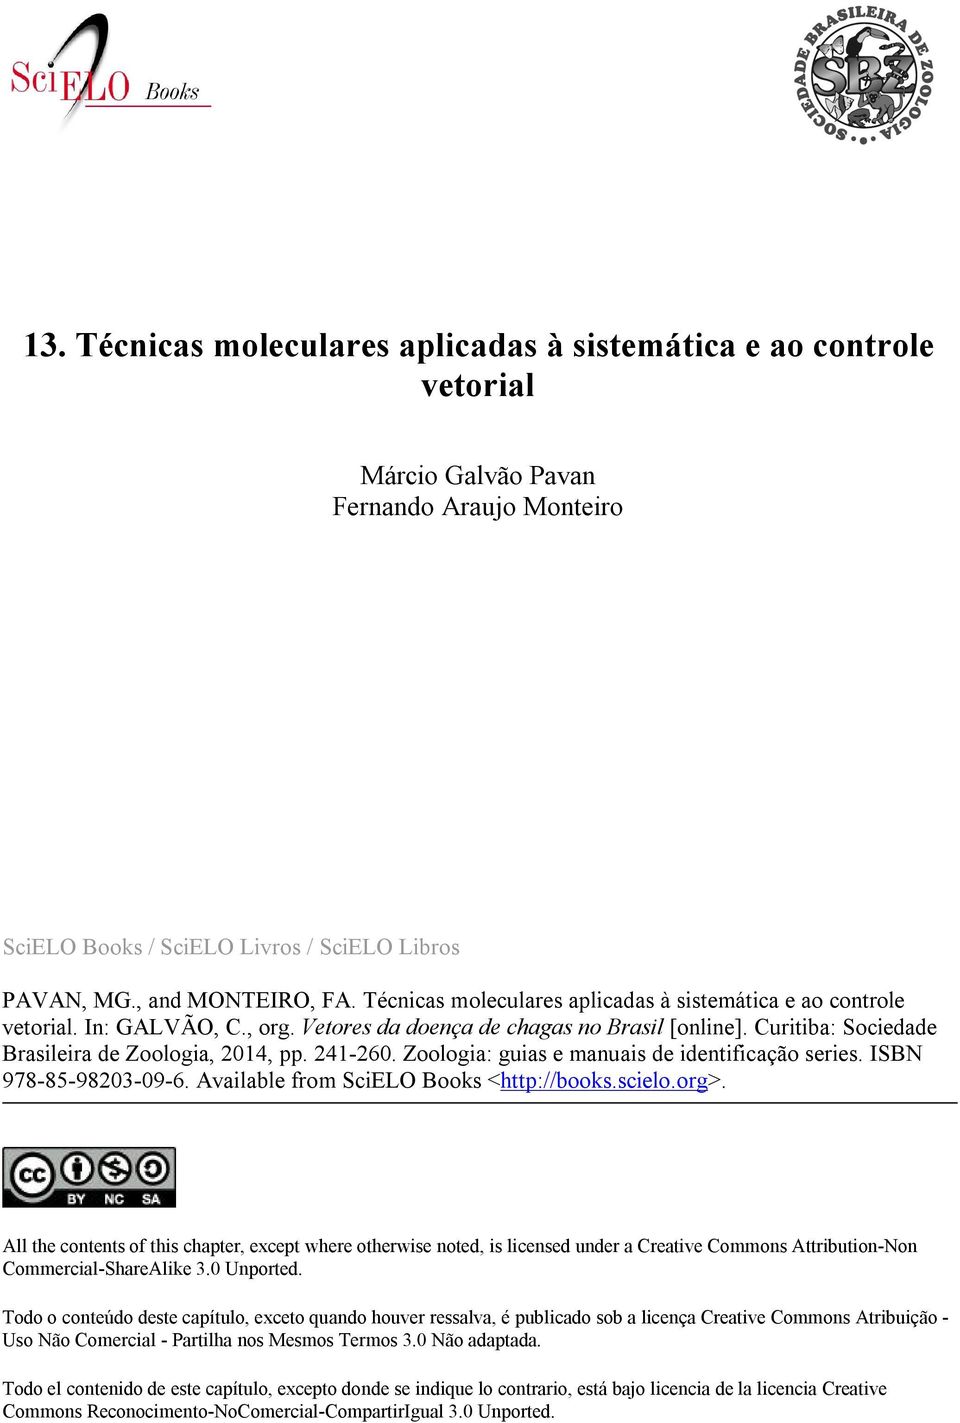 Zoologia: guias e manuais de identificação series. ISBN 978-85-98203-09-6. Available from SciELO Books <http://books.scielo.org>.